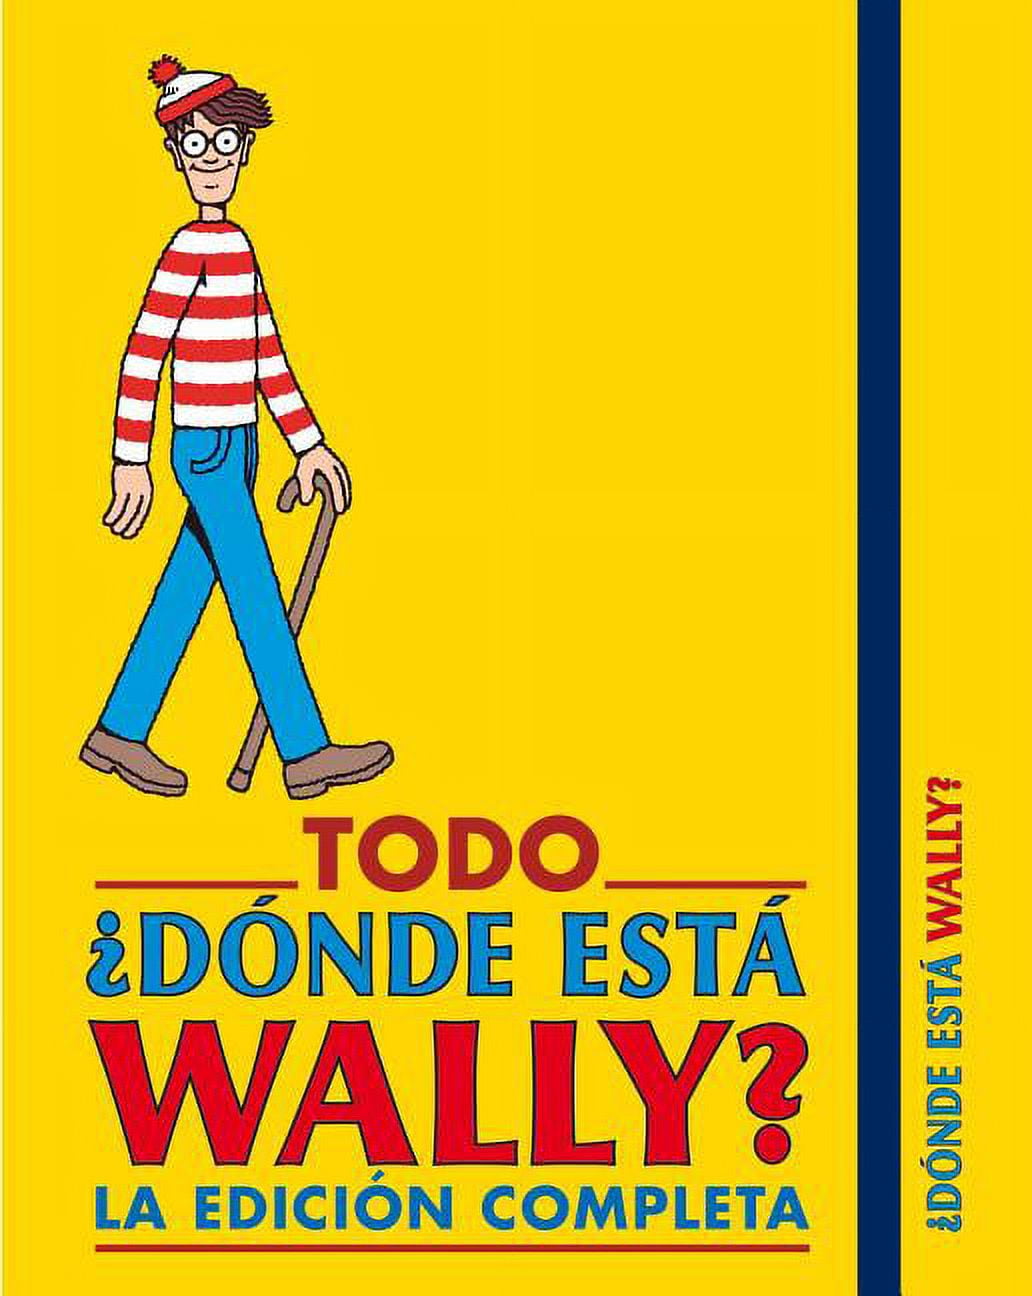 Edition　Todo　Complete　Completa　Wally?:　Is　Wally?:　Where　Edición　Está　Dónde　(Paperback)